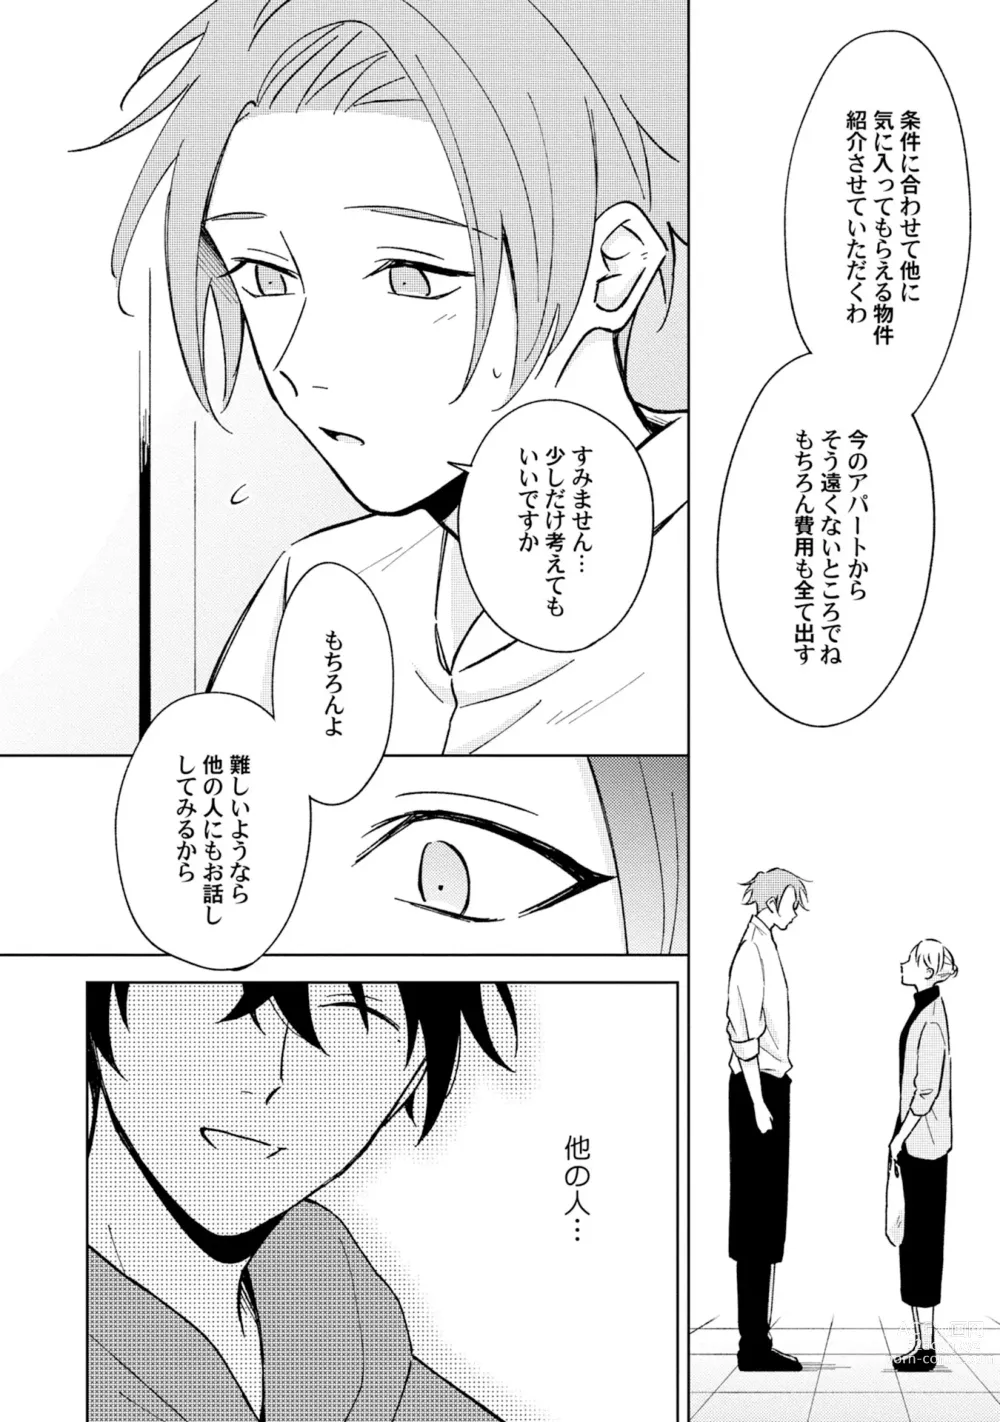 Page 12 of manga Toho 3-byou no Trouble Love Room 4